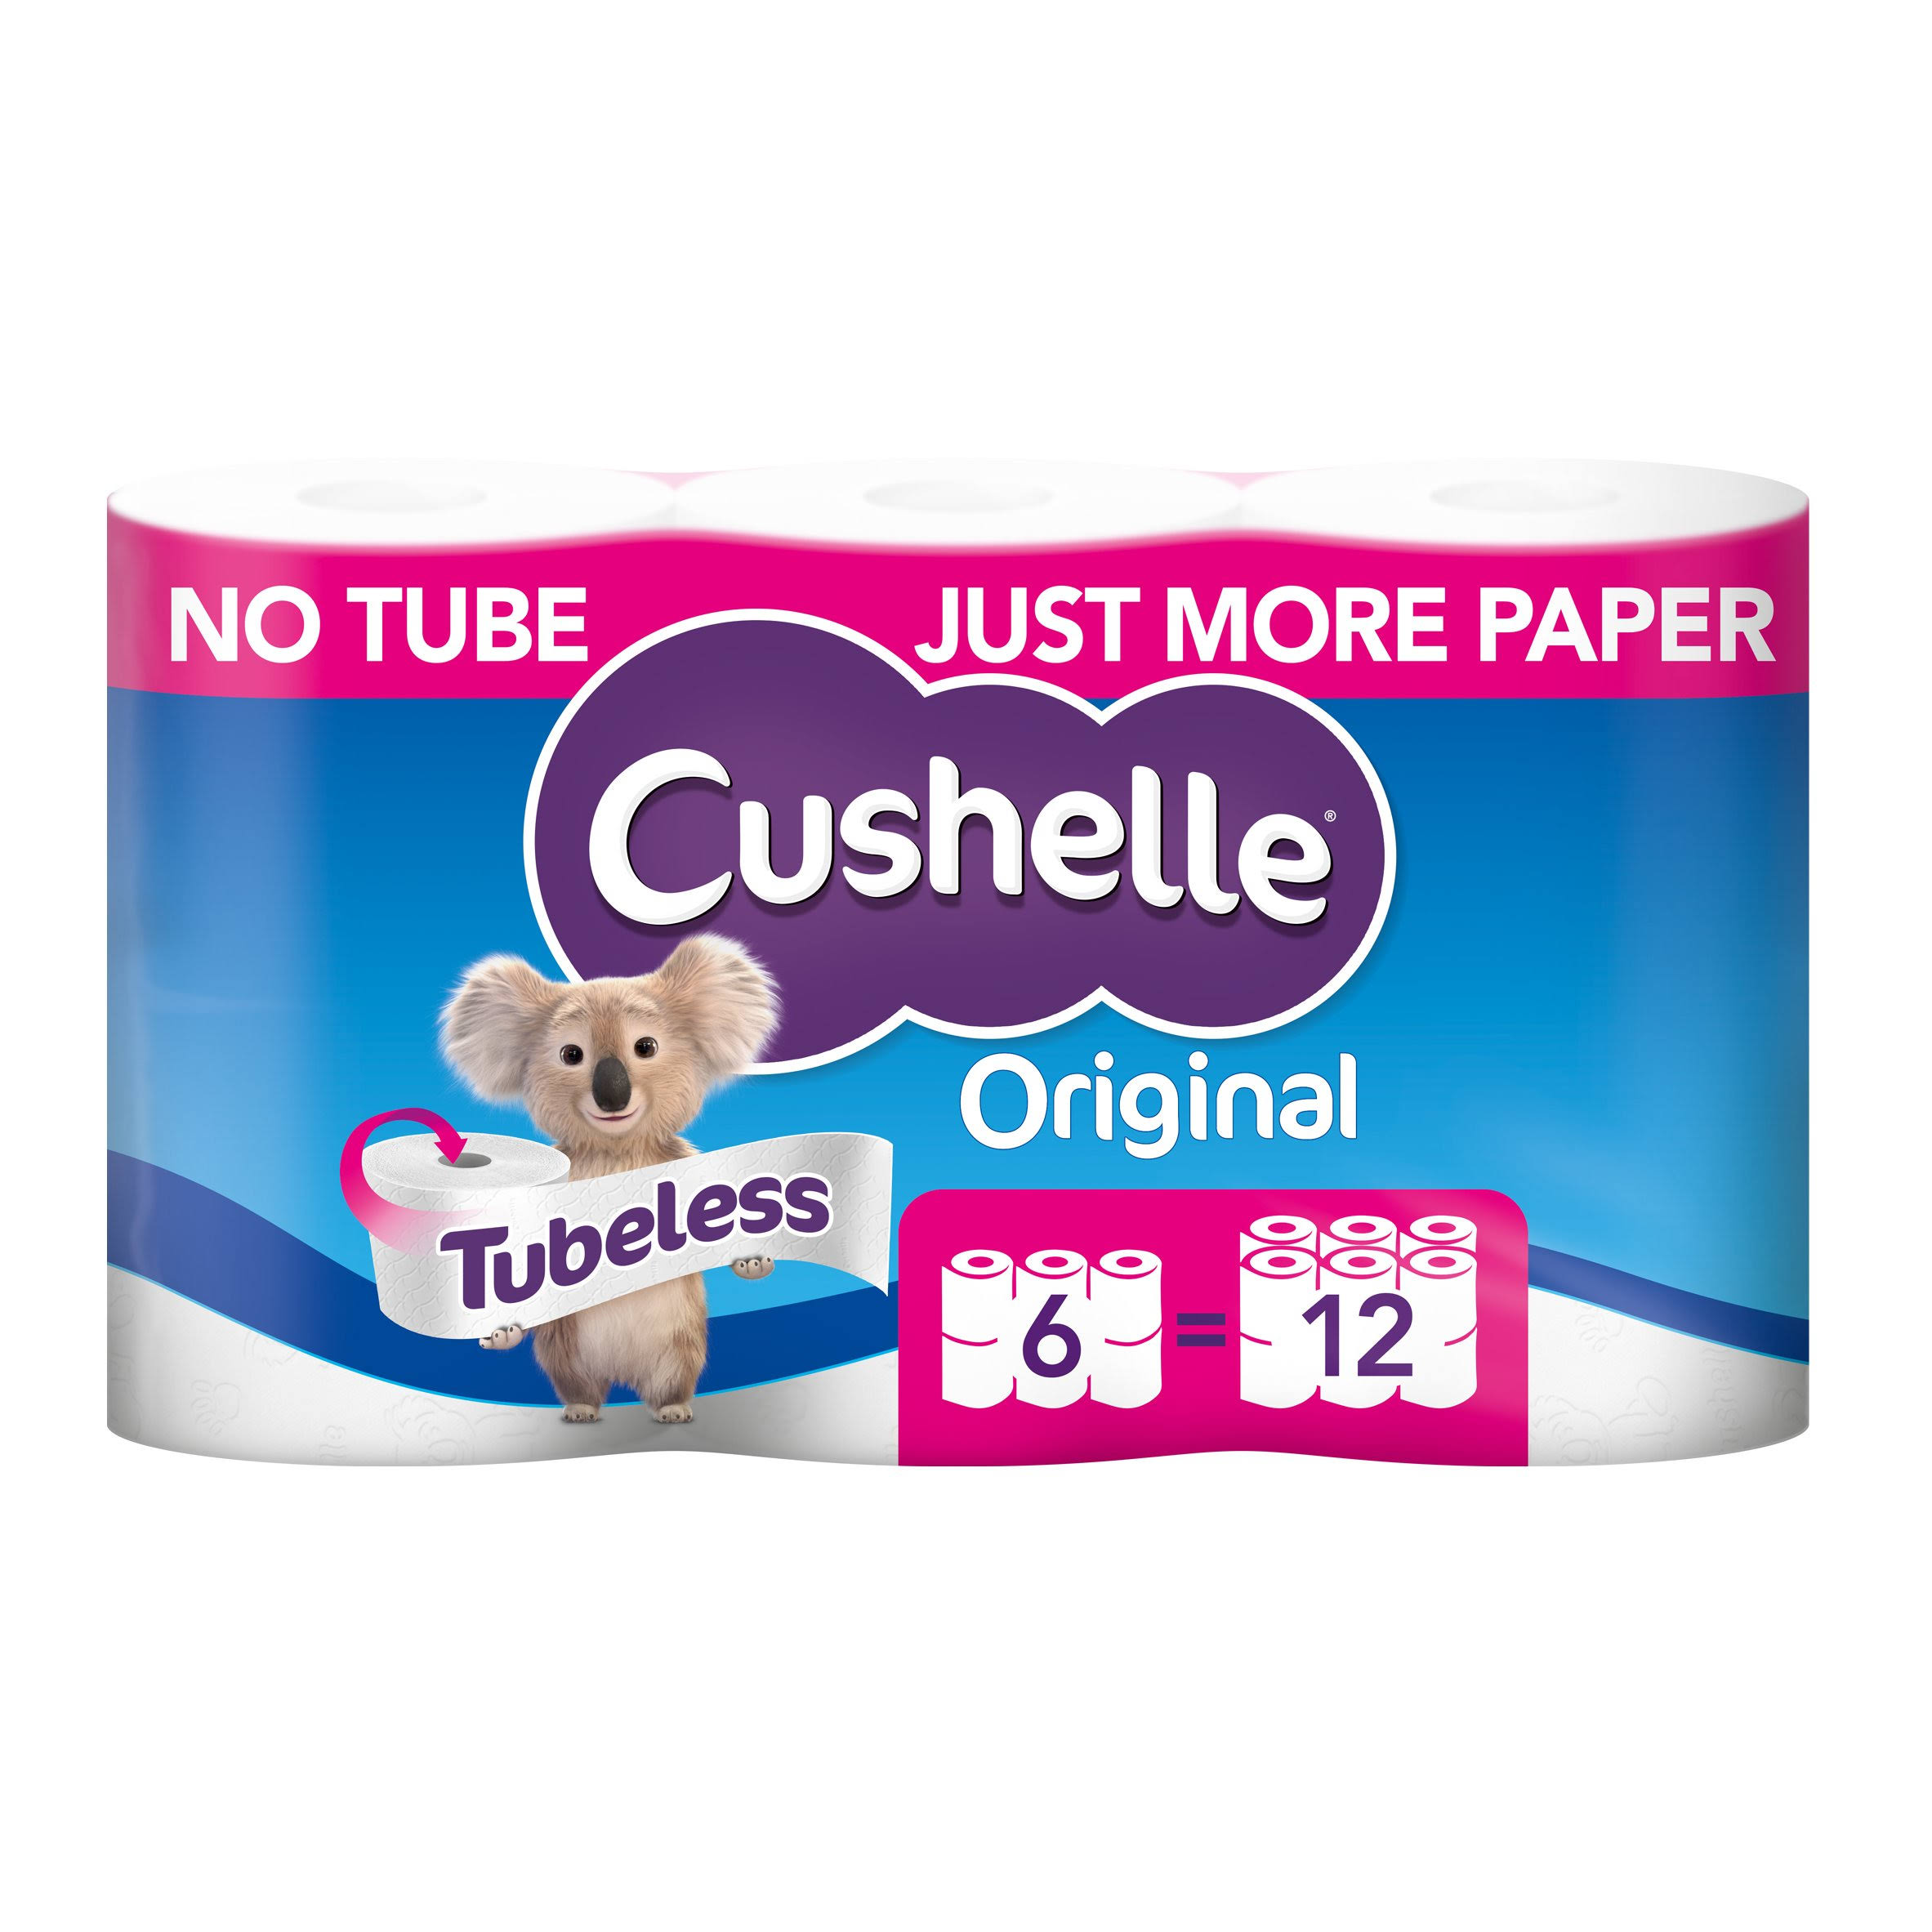 Cushelle Original Tubeless Toilet Tissue 6 = 12 Rolls